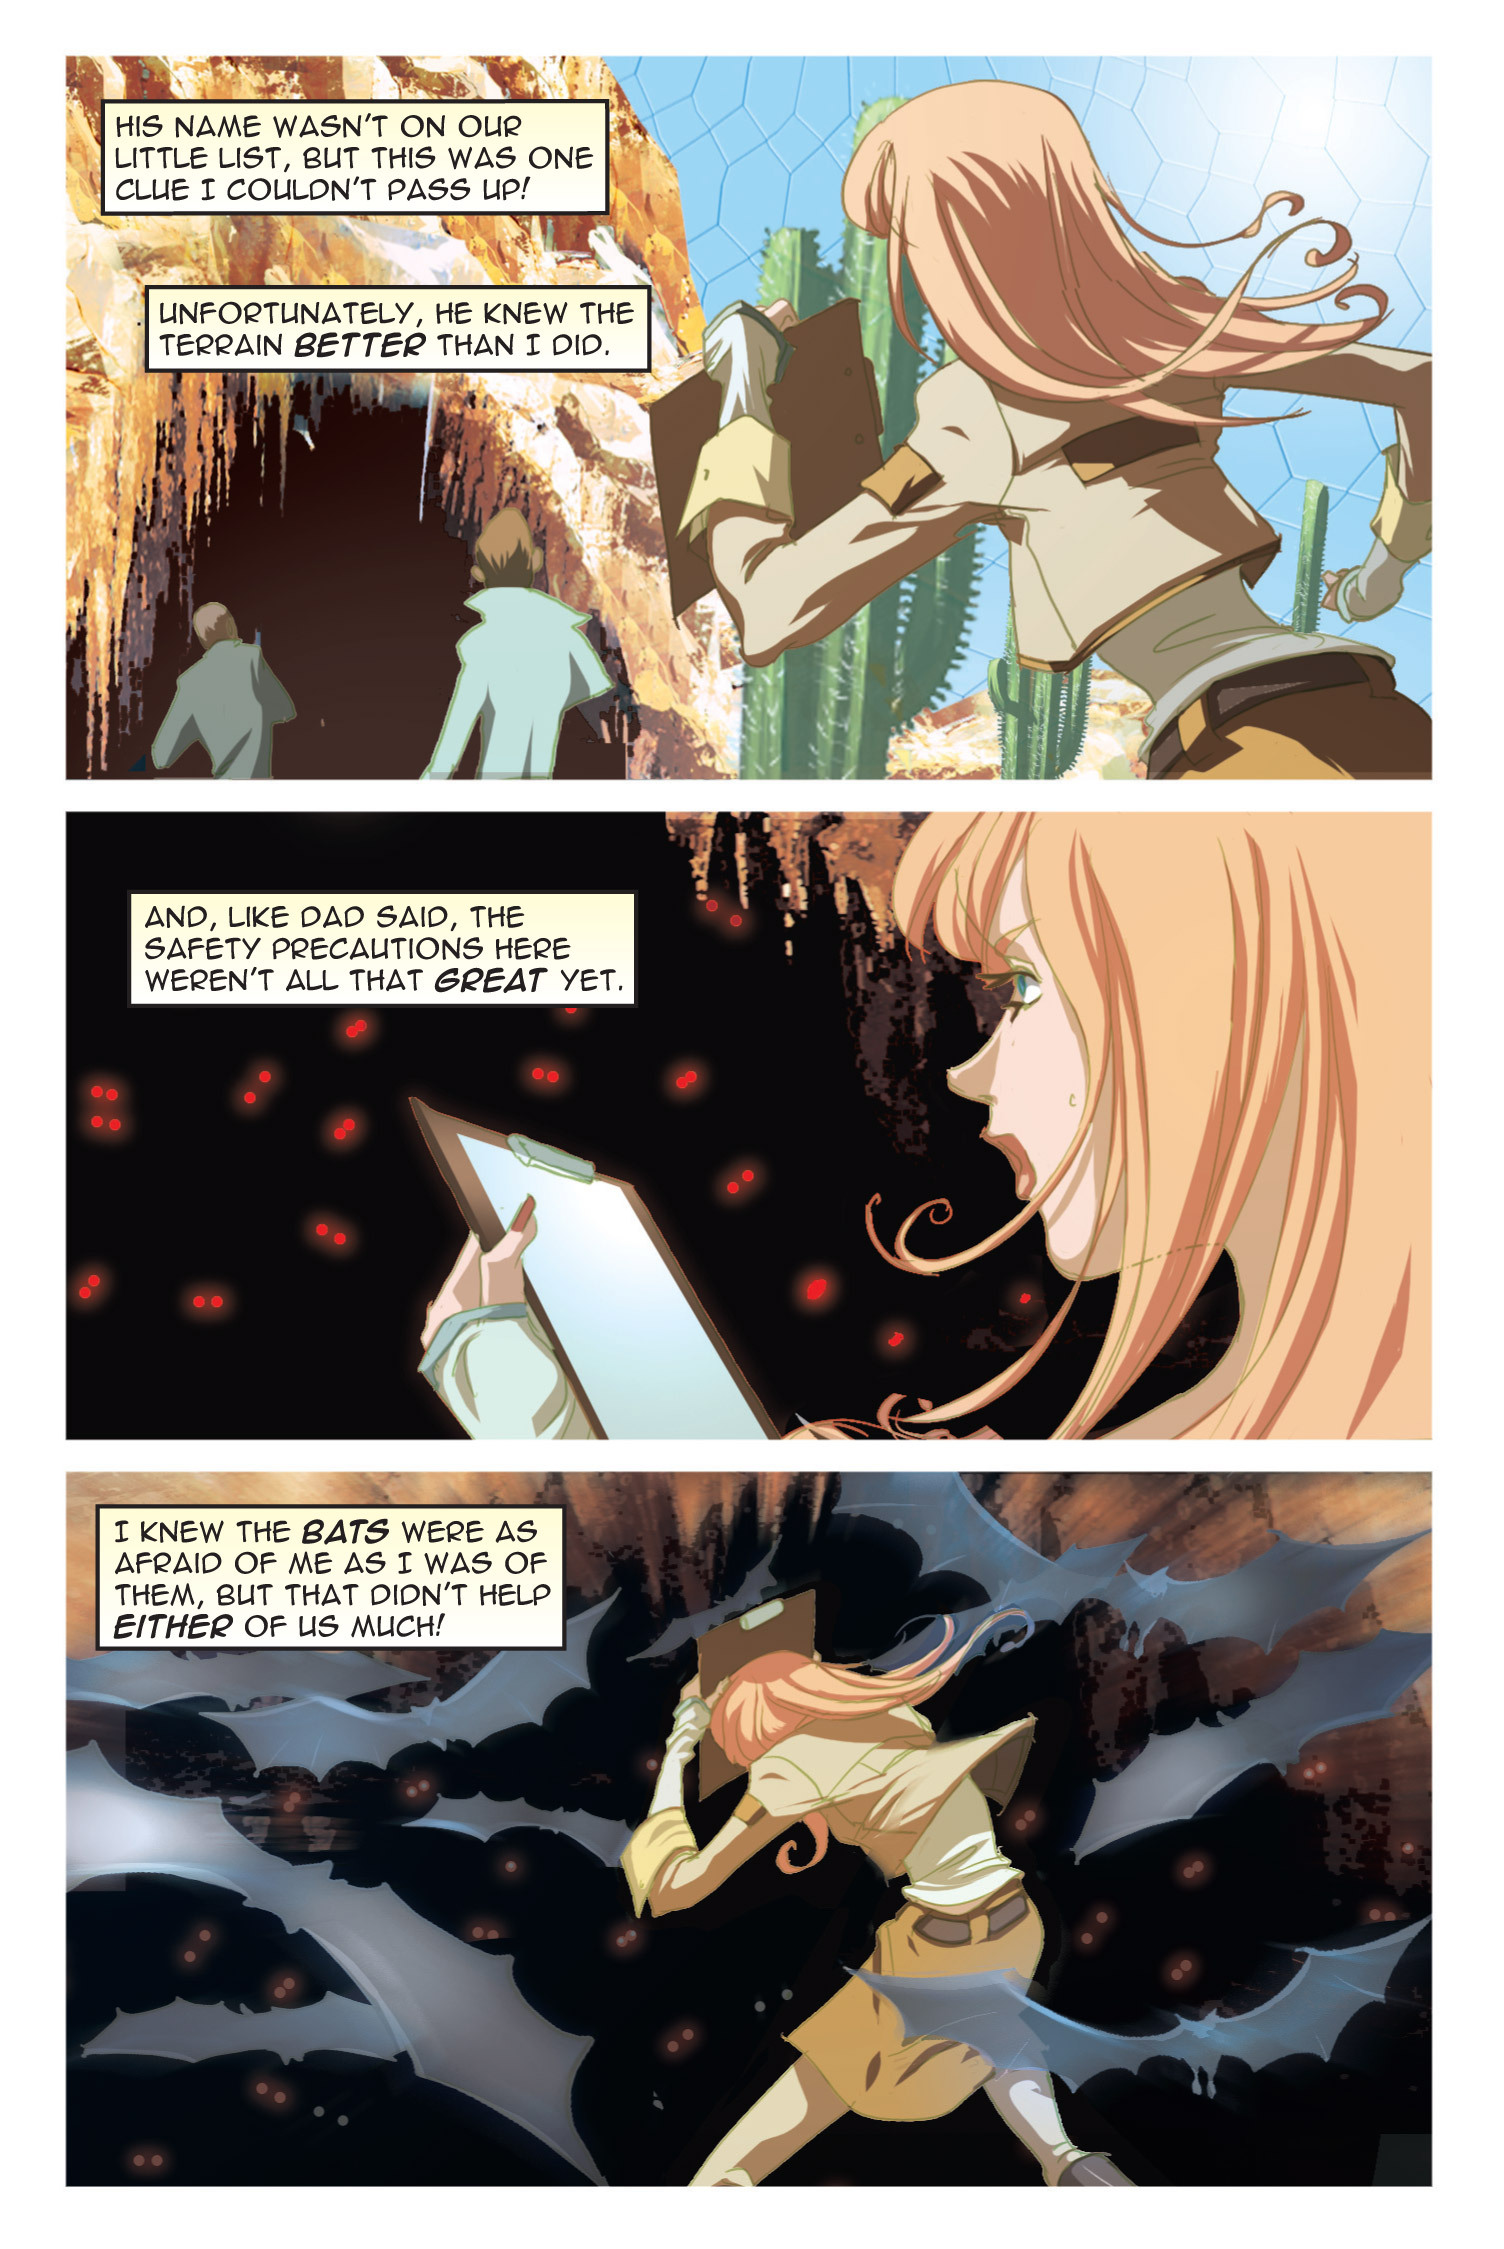 Read online Nancy Drew comic -  Issue #8 - 11